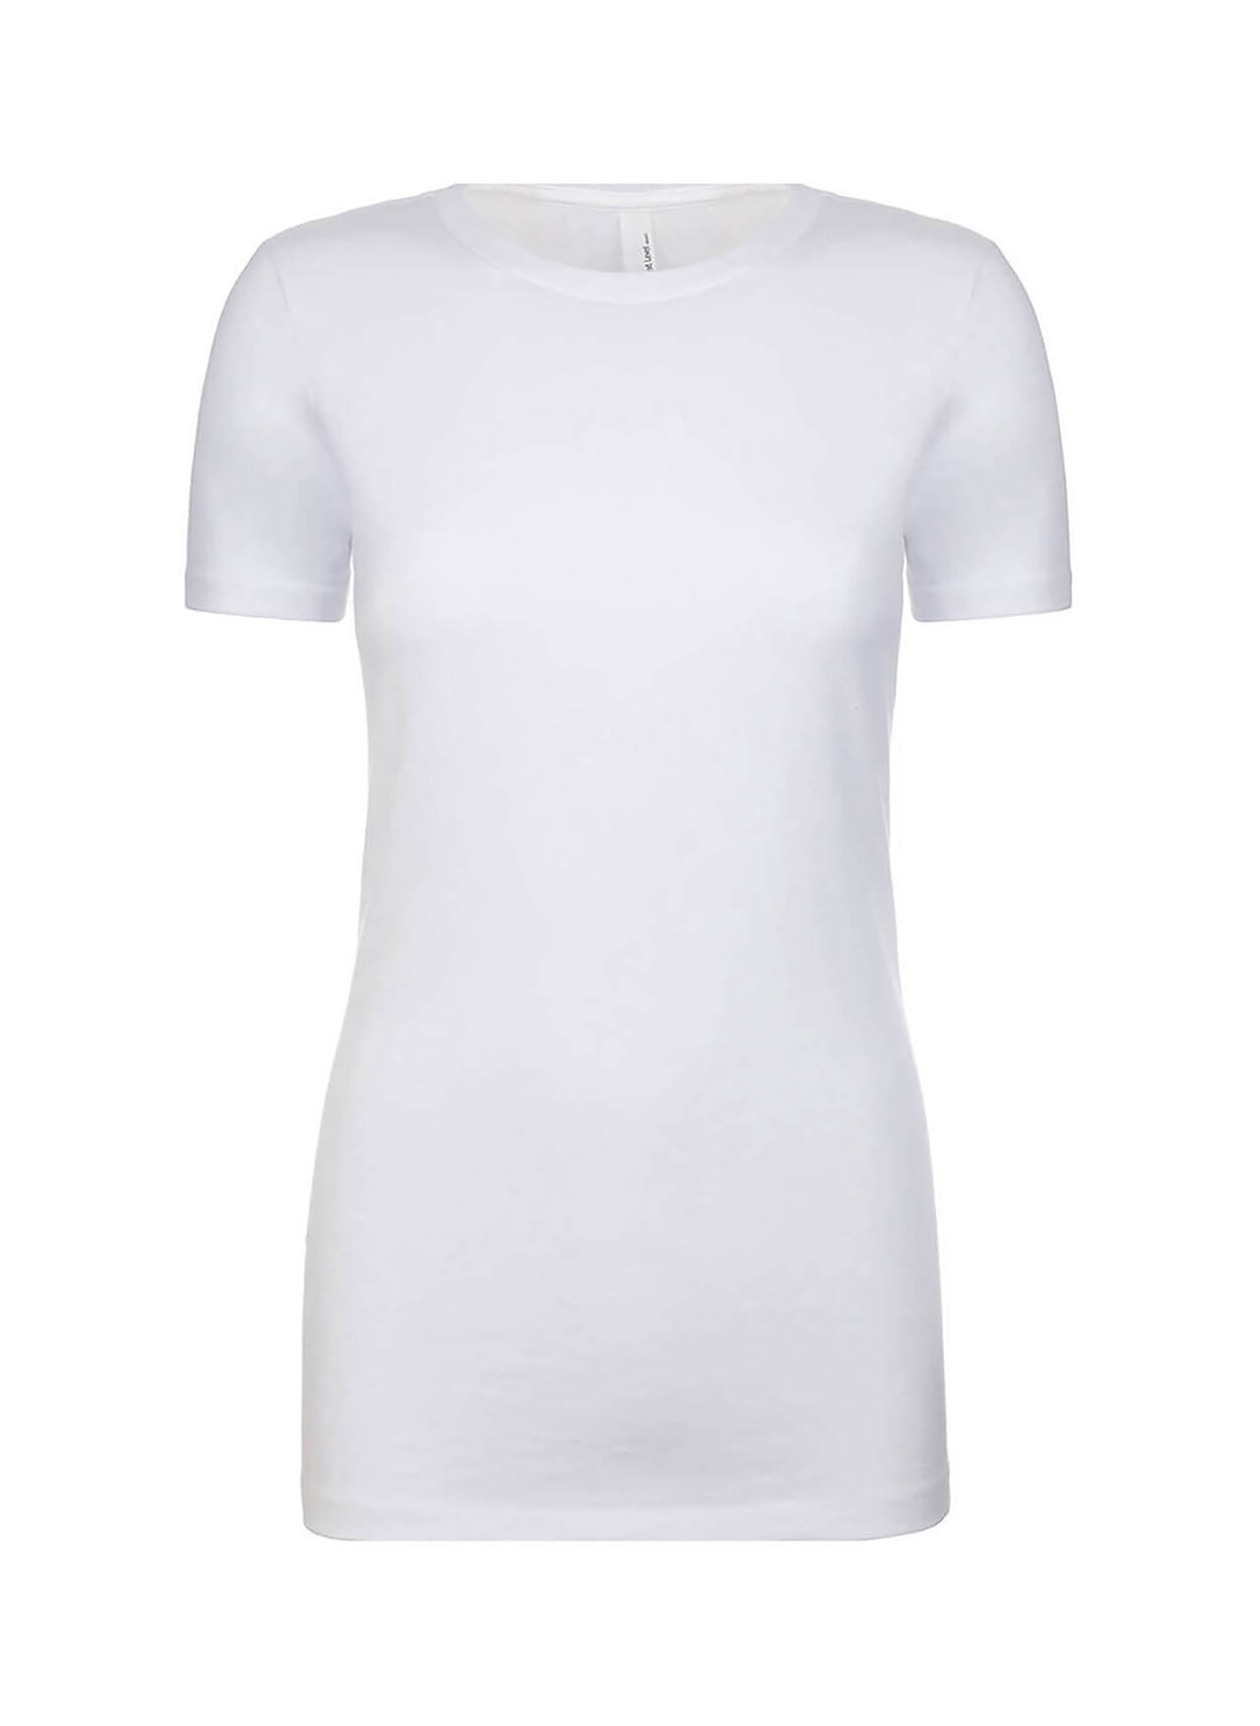 Next Level Women's White CVC T-Shirt